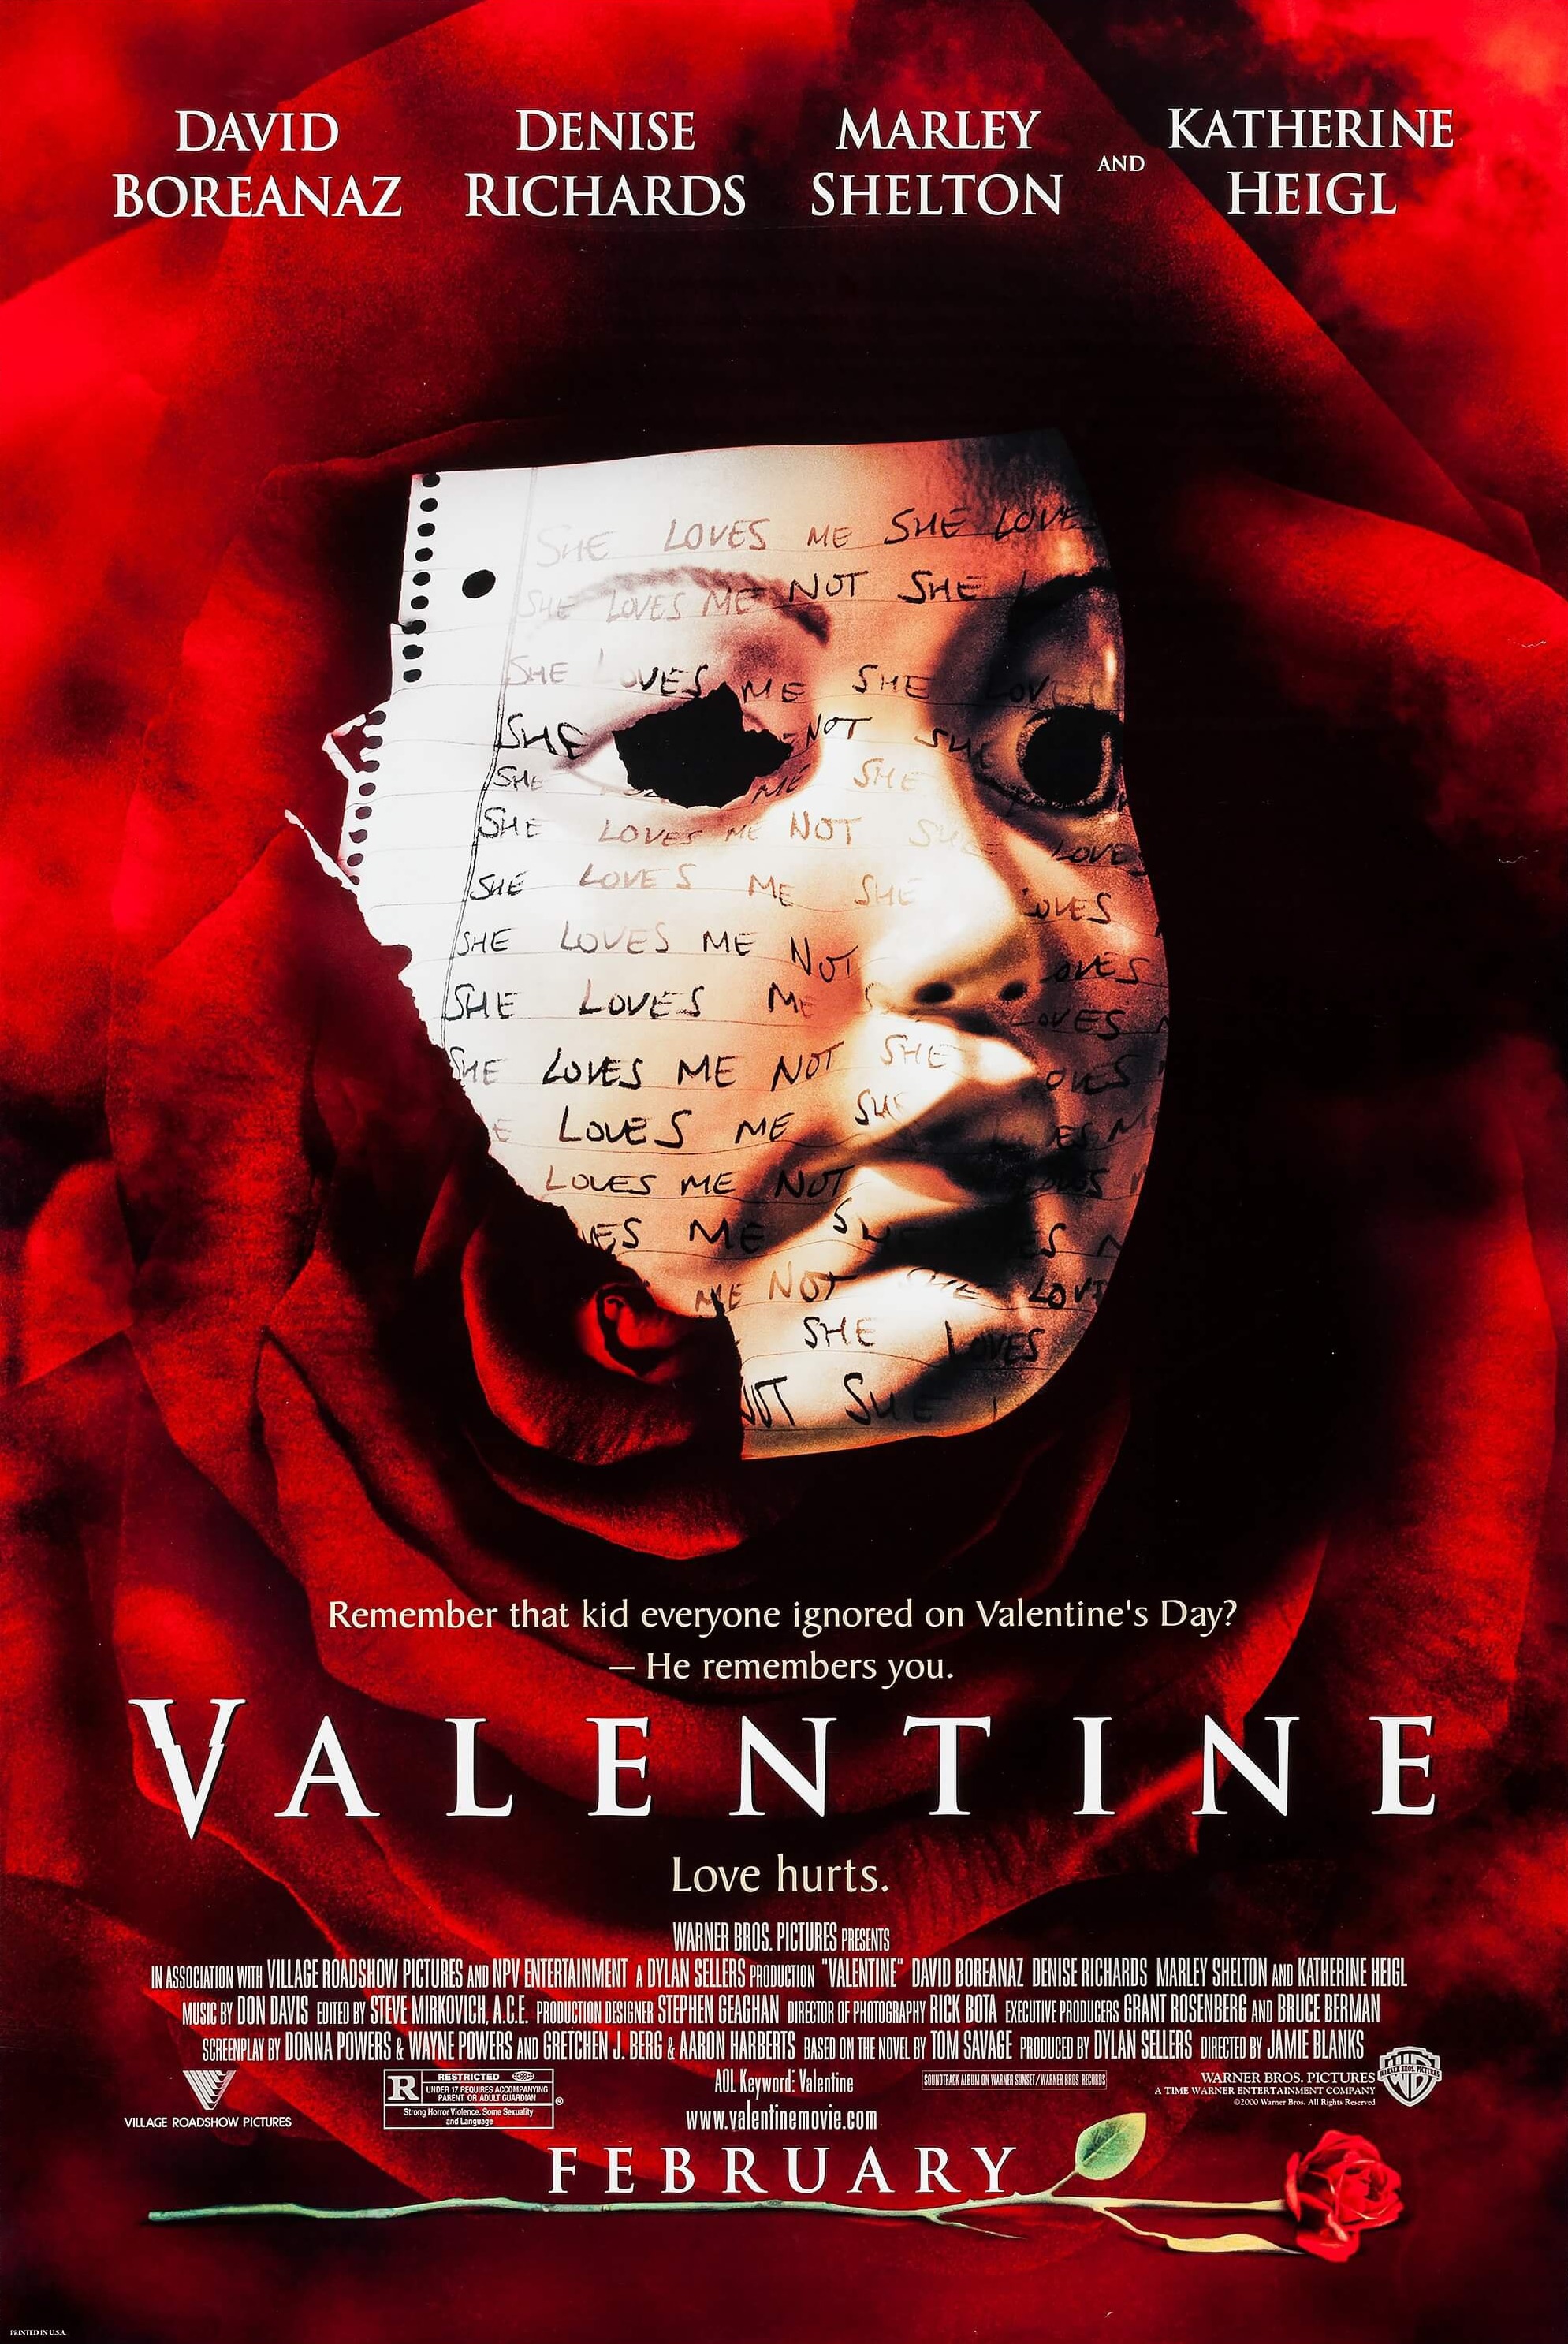 Valentine (film) Warner Bros